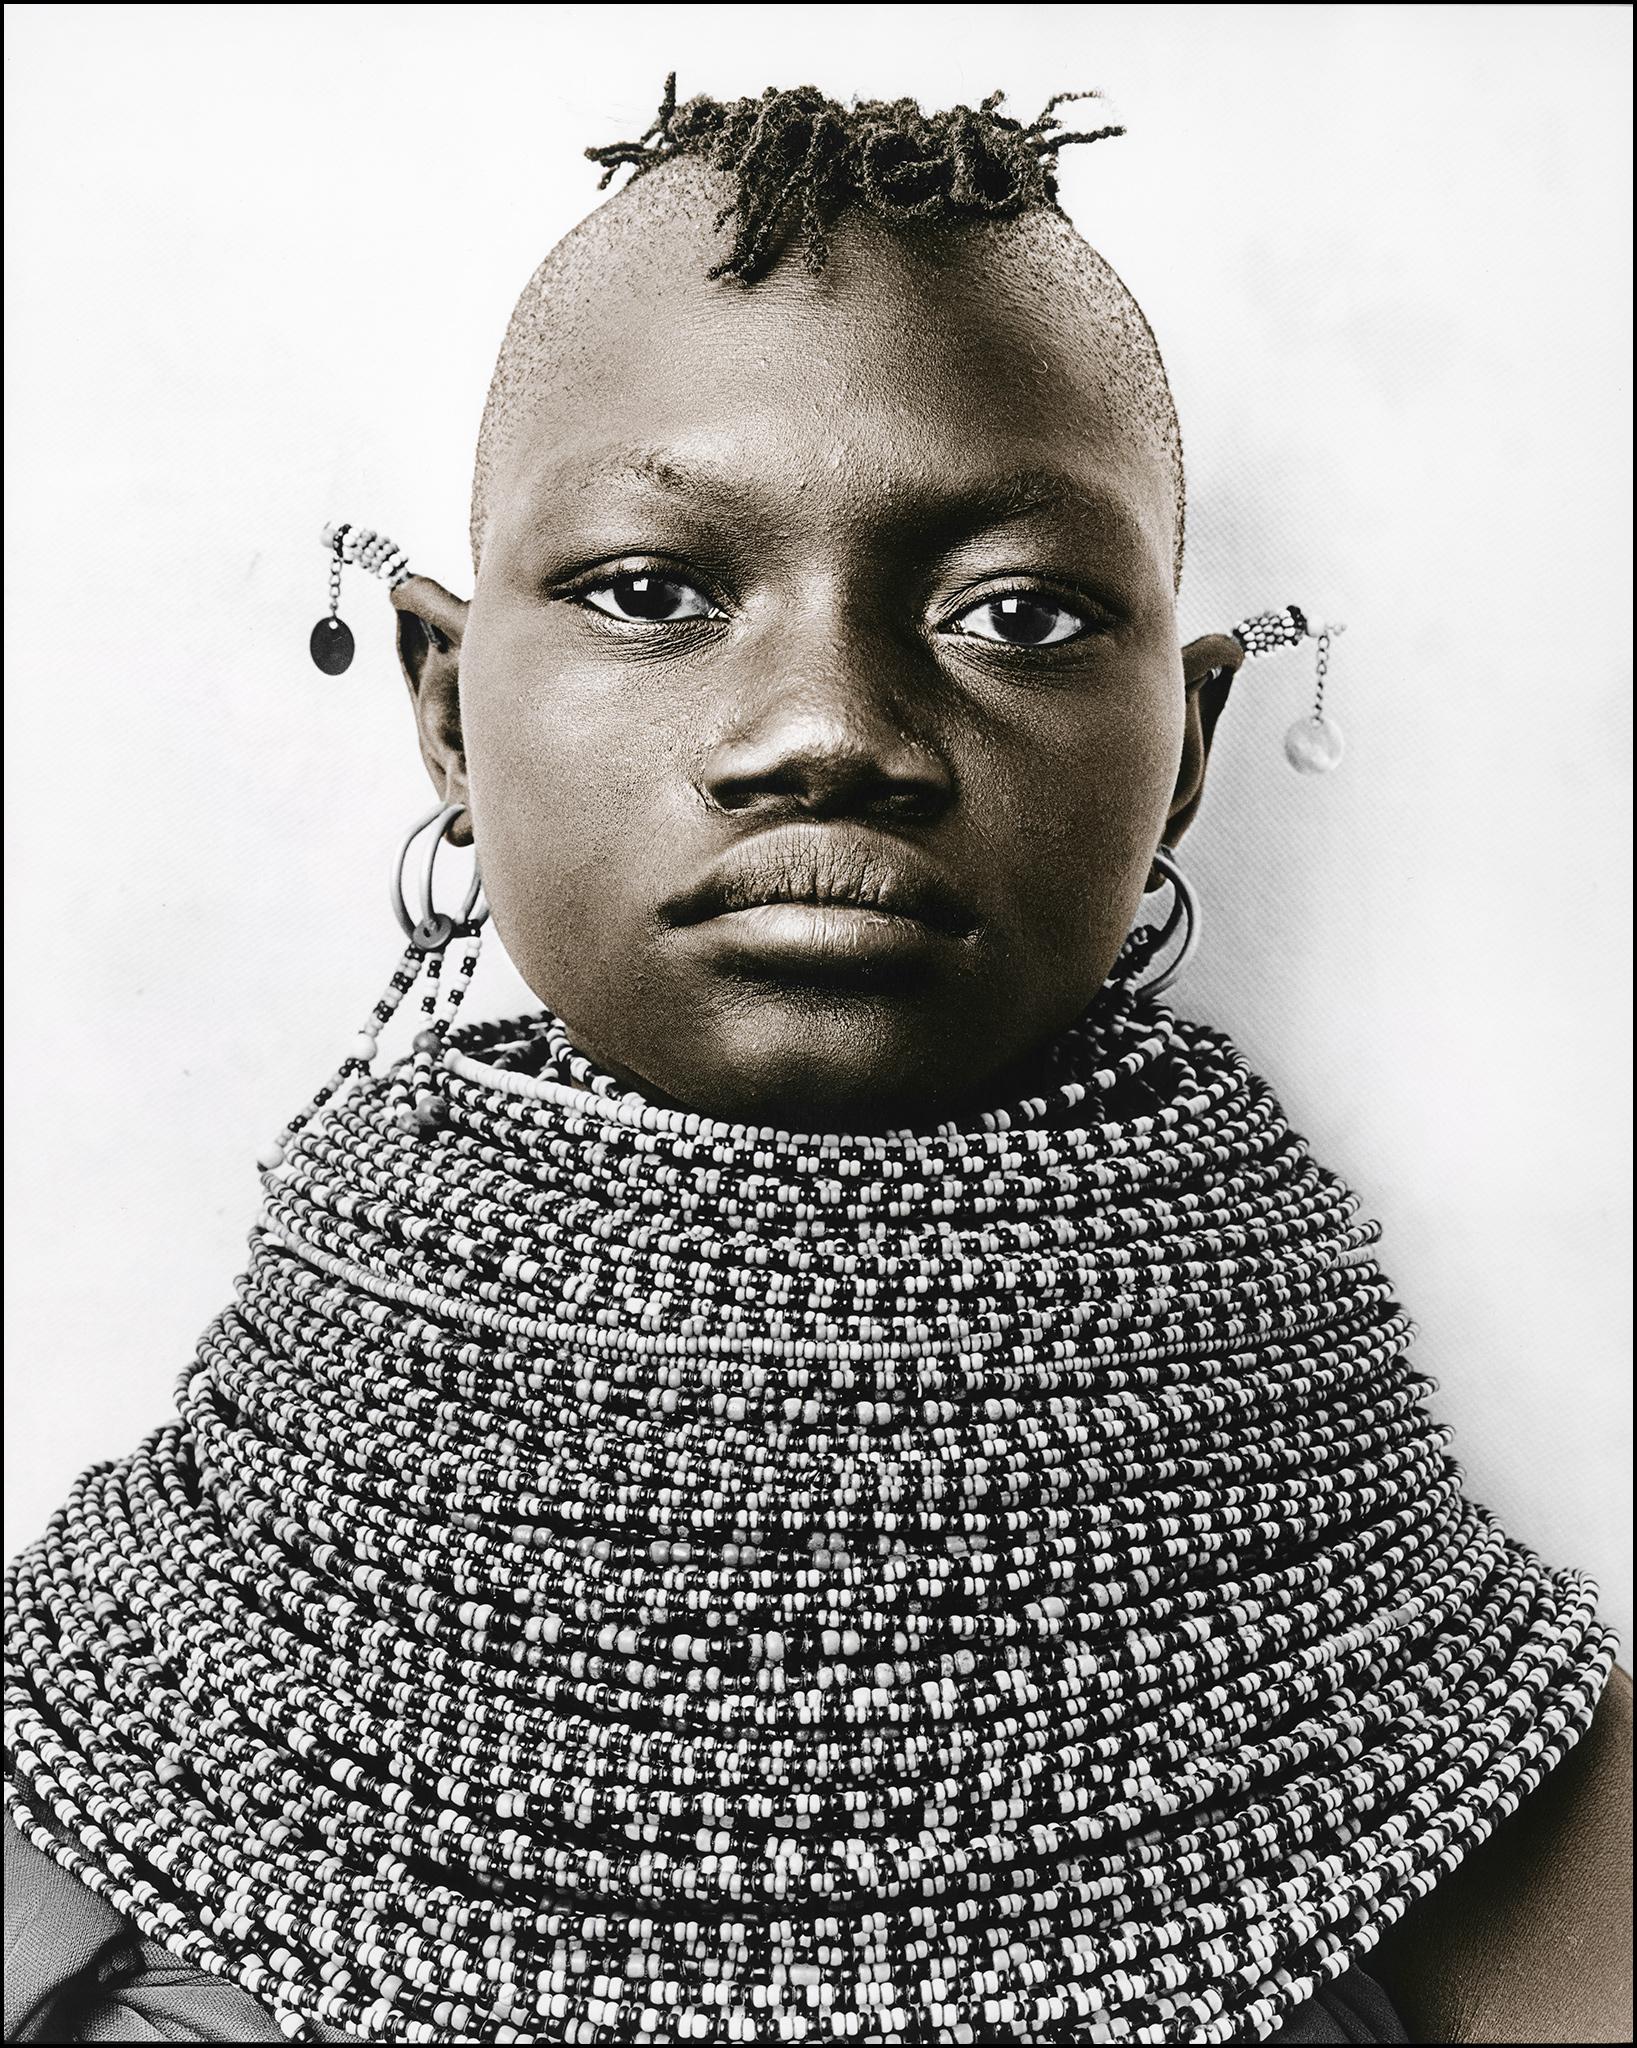 Portrait Photograph Jan C. Schlegel - Raila (13), Turkana, Kenya, gélatine d'argent, photographie, contemporaine